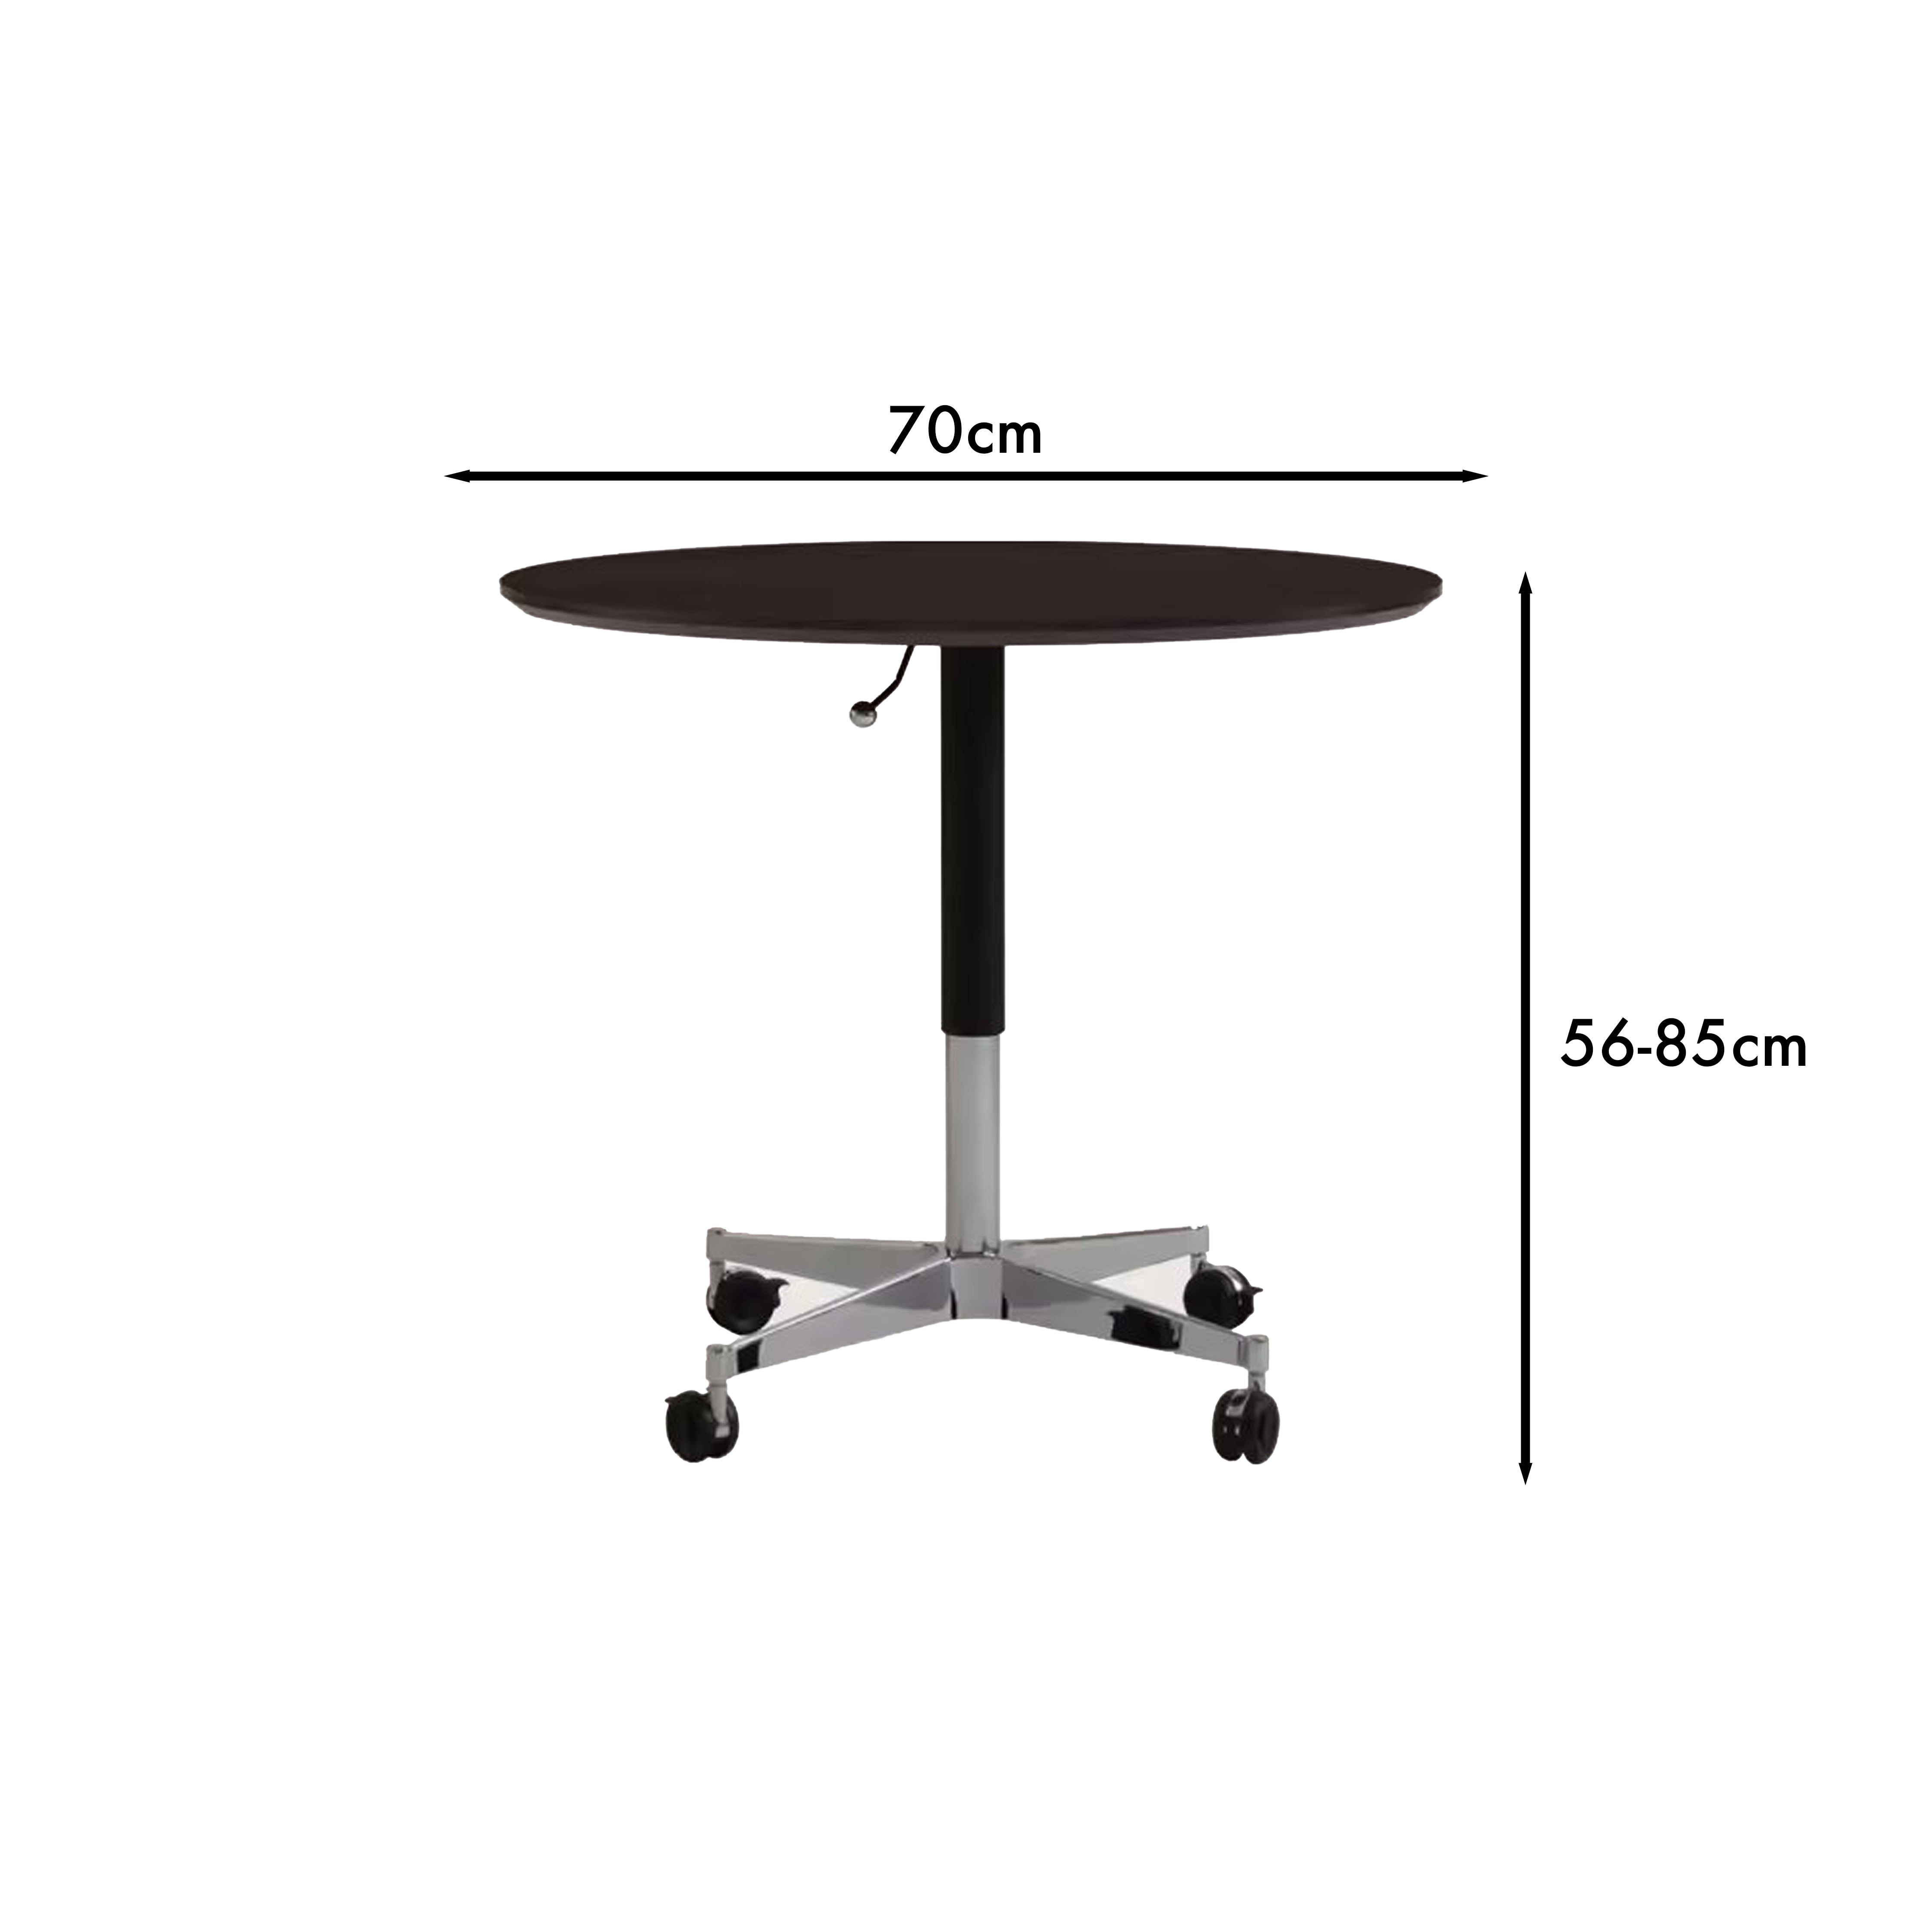 9.0 Adjustable Table